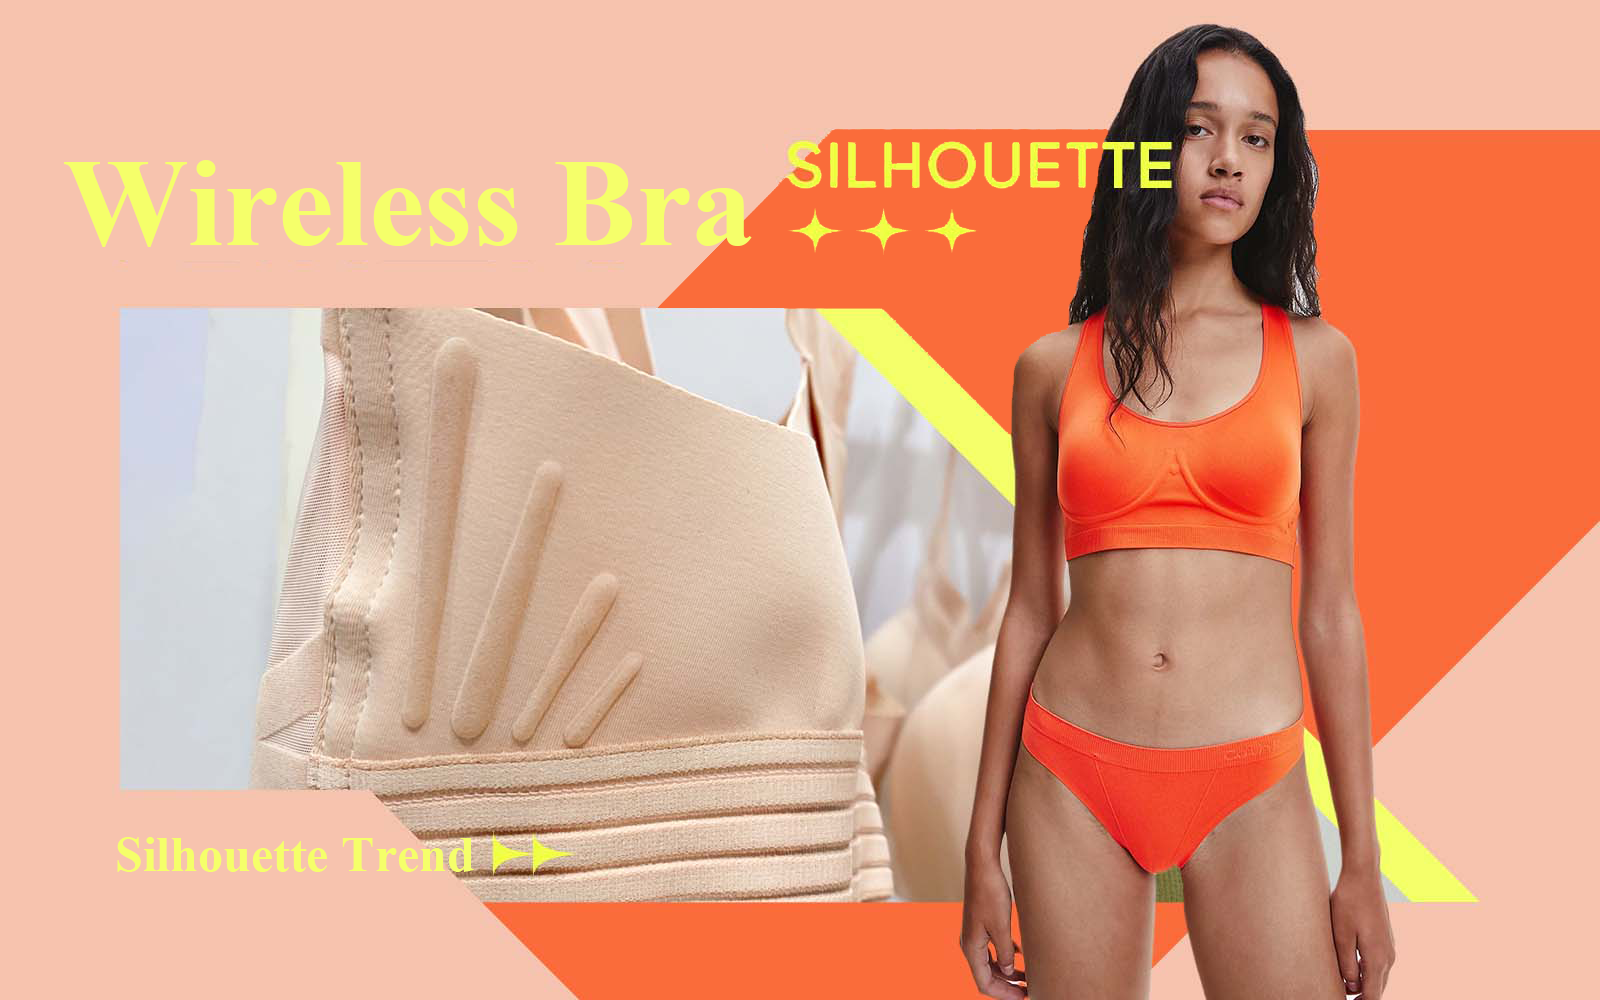 Wireless Bra -- The Silhouette Trend for Women's Underwear